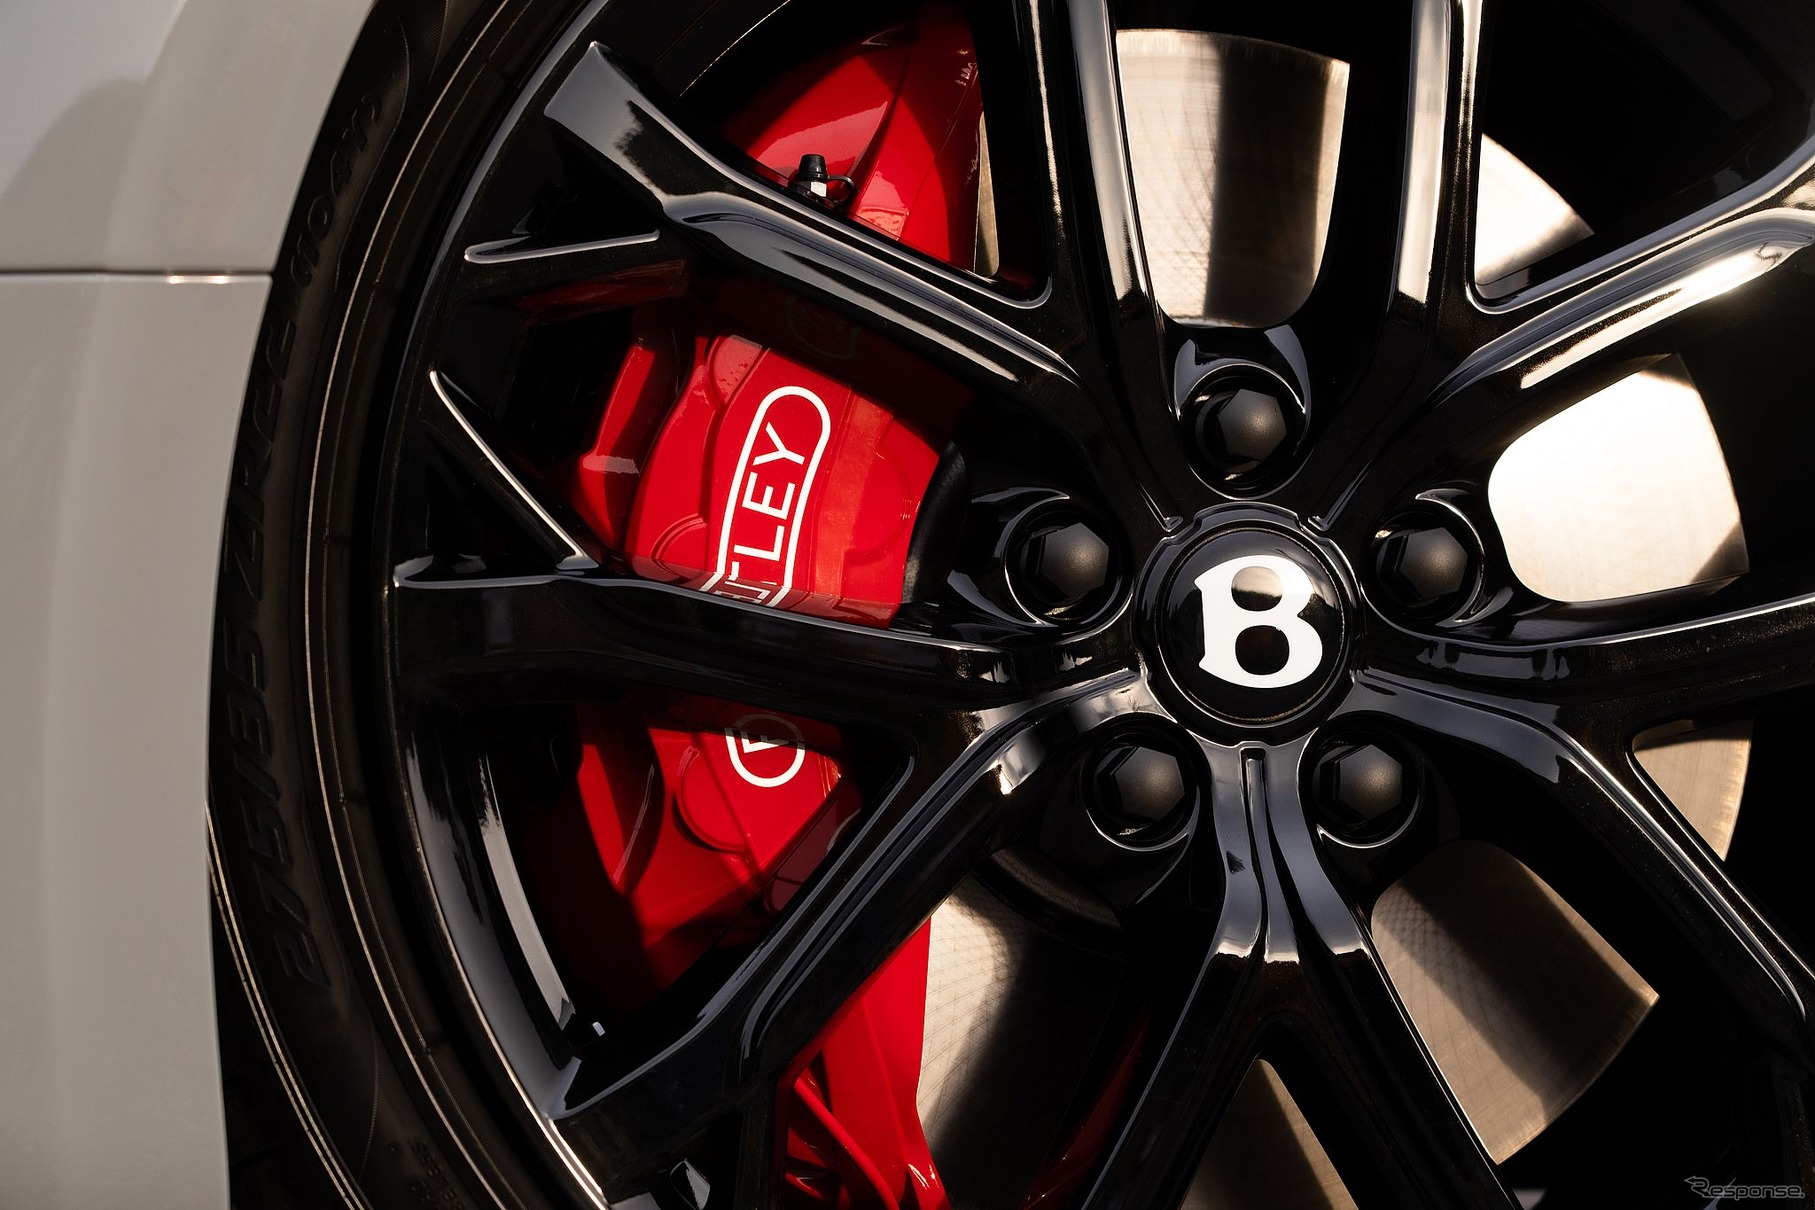 ベントレー・コンチネンタル GT シリーズの新グレードのティザー写真